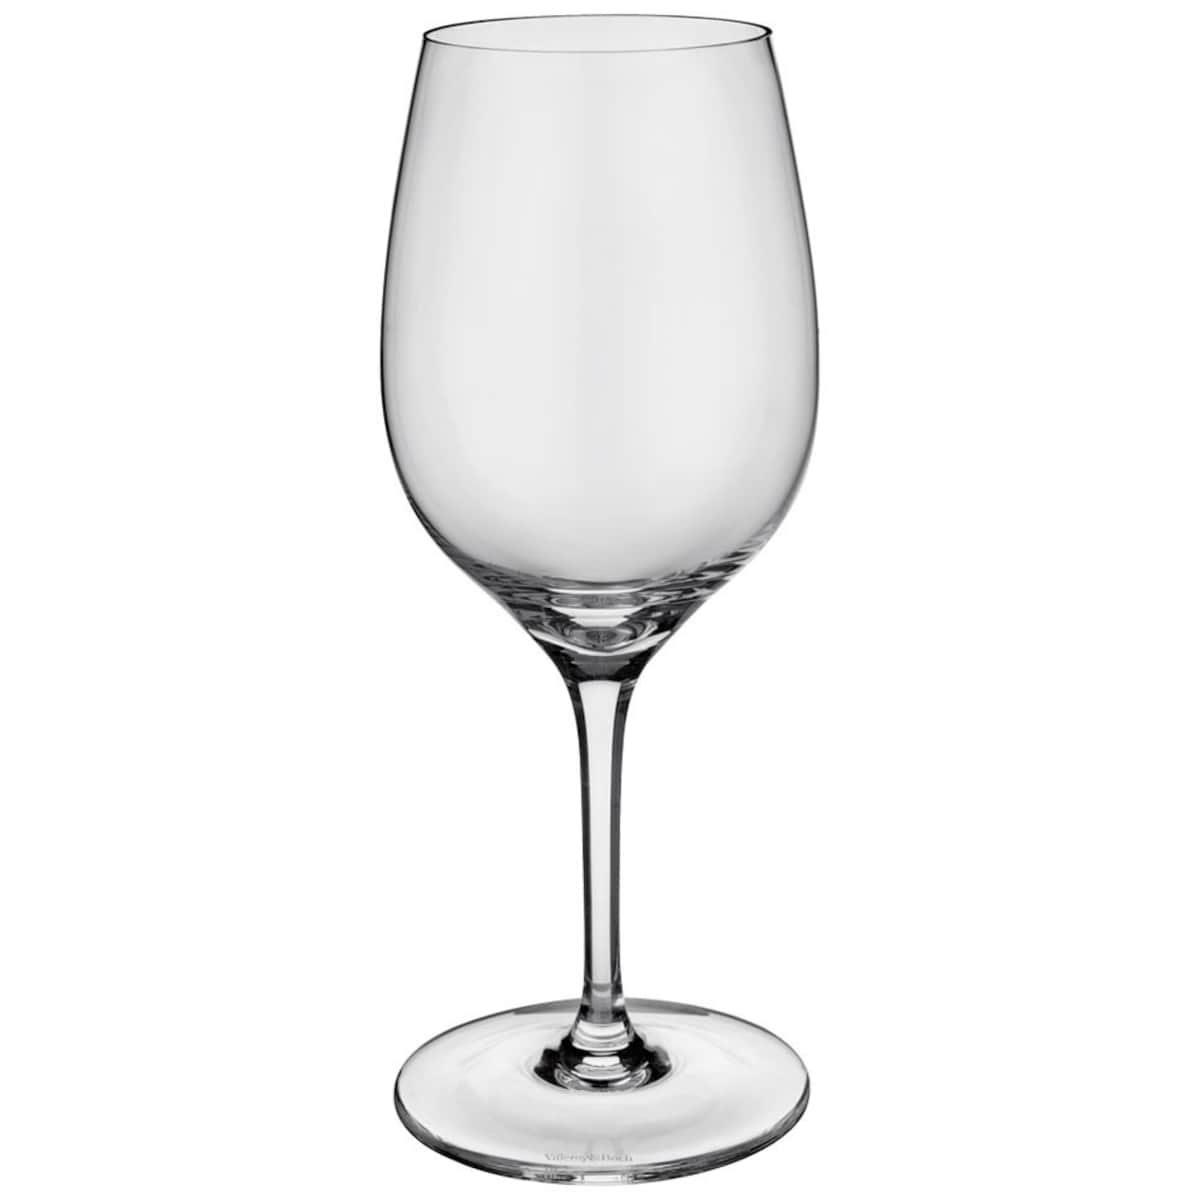 Zestaw 4 kieliszków do białego wina Entree, 295 ml, Villeroy & Boch